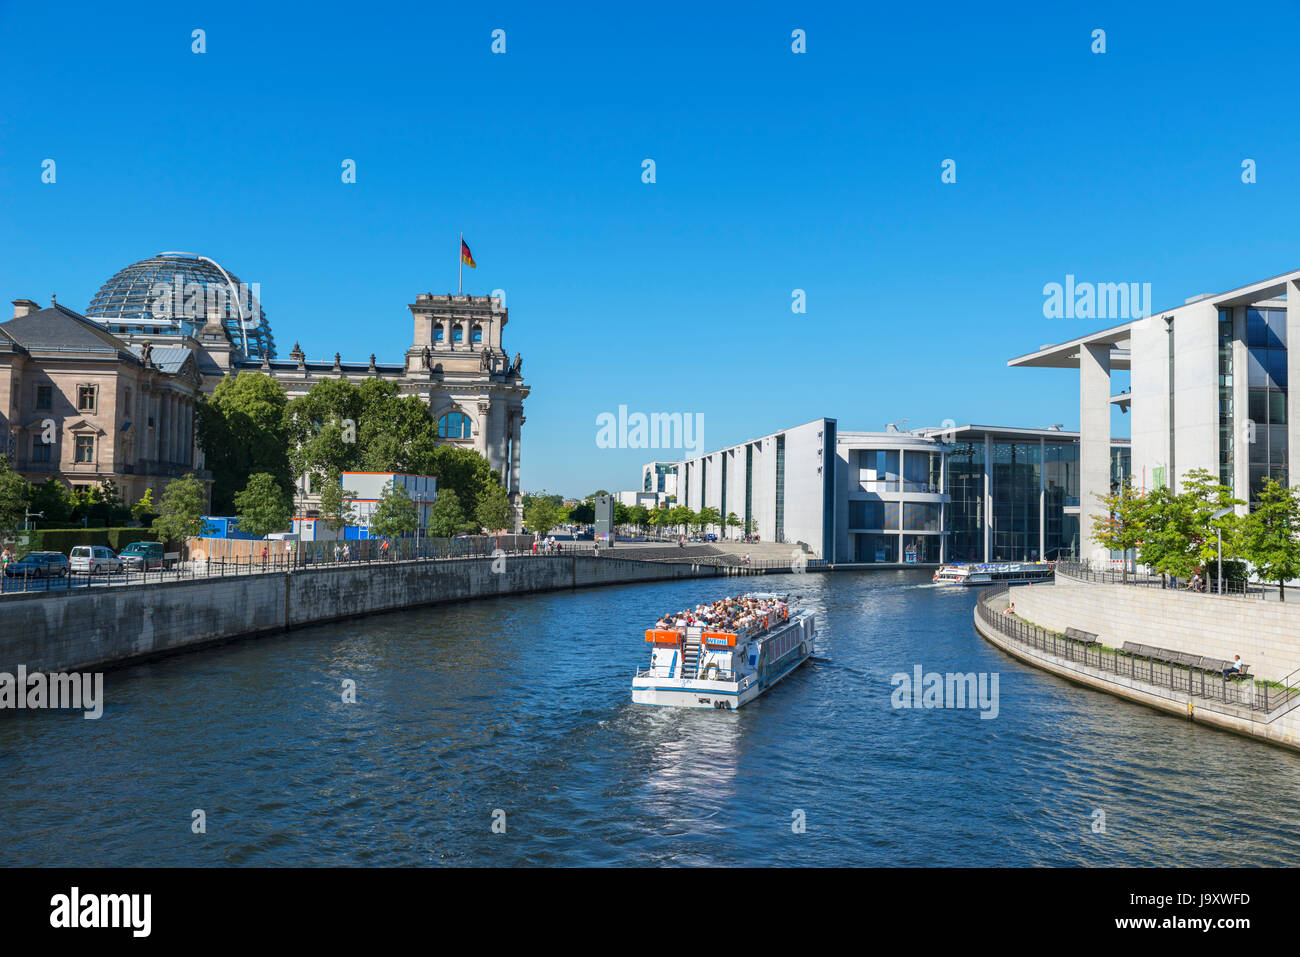 Flusskreuzfahrt Schiff auf der Spree vor dem Deutschen Bundestag Gebäuden, Mitte, Berlin, Deutschland Stockfoto